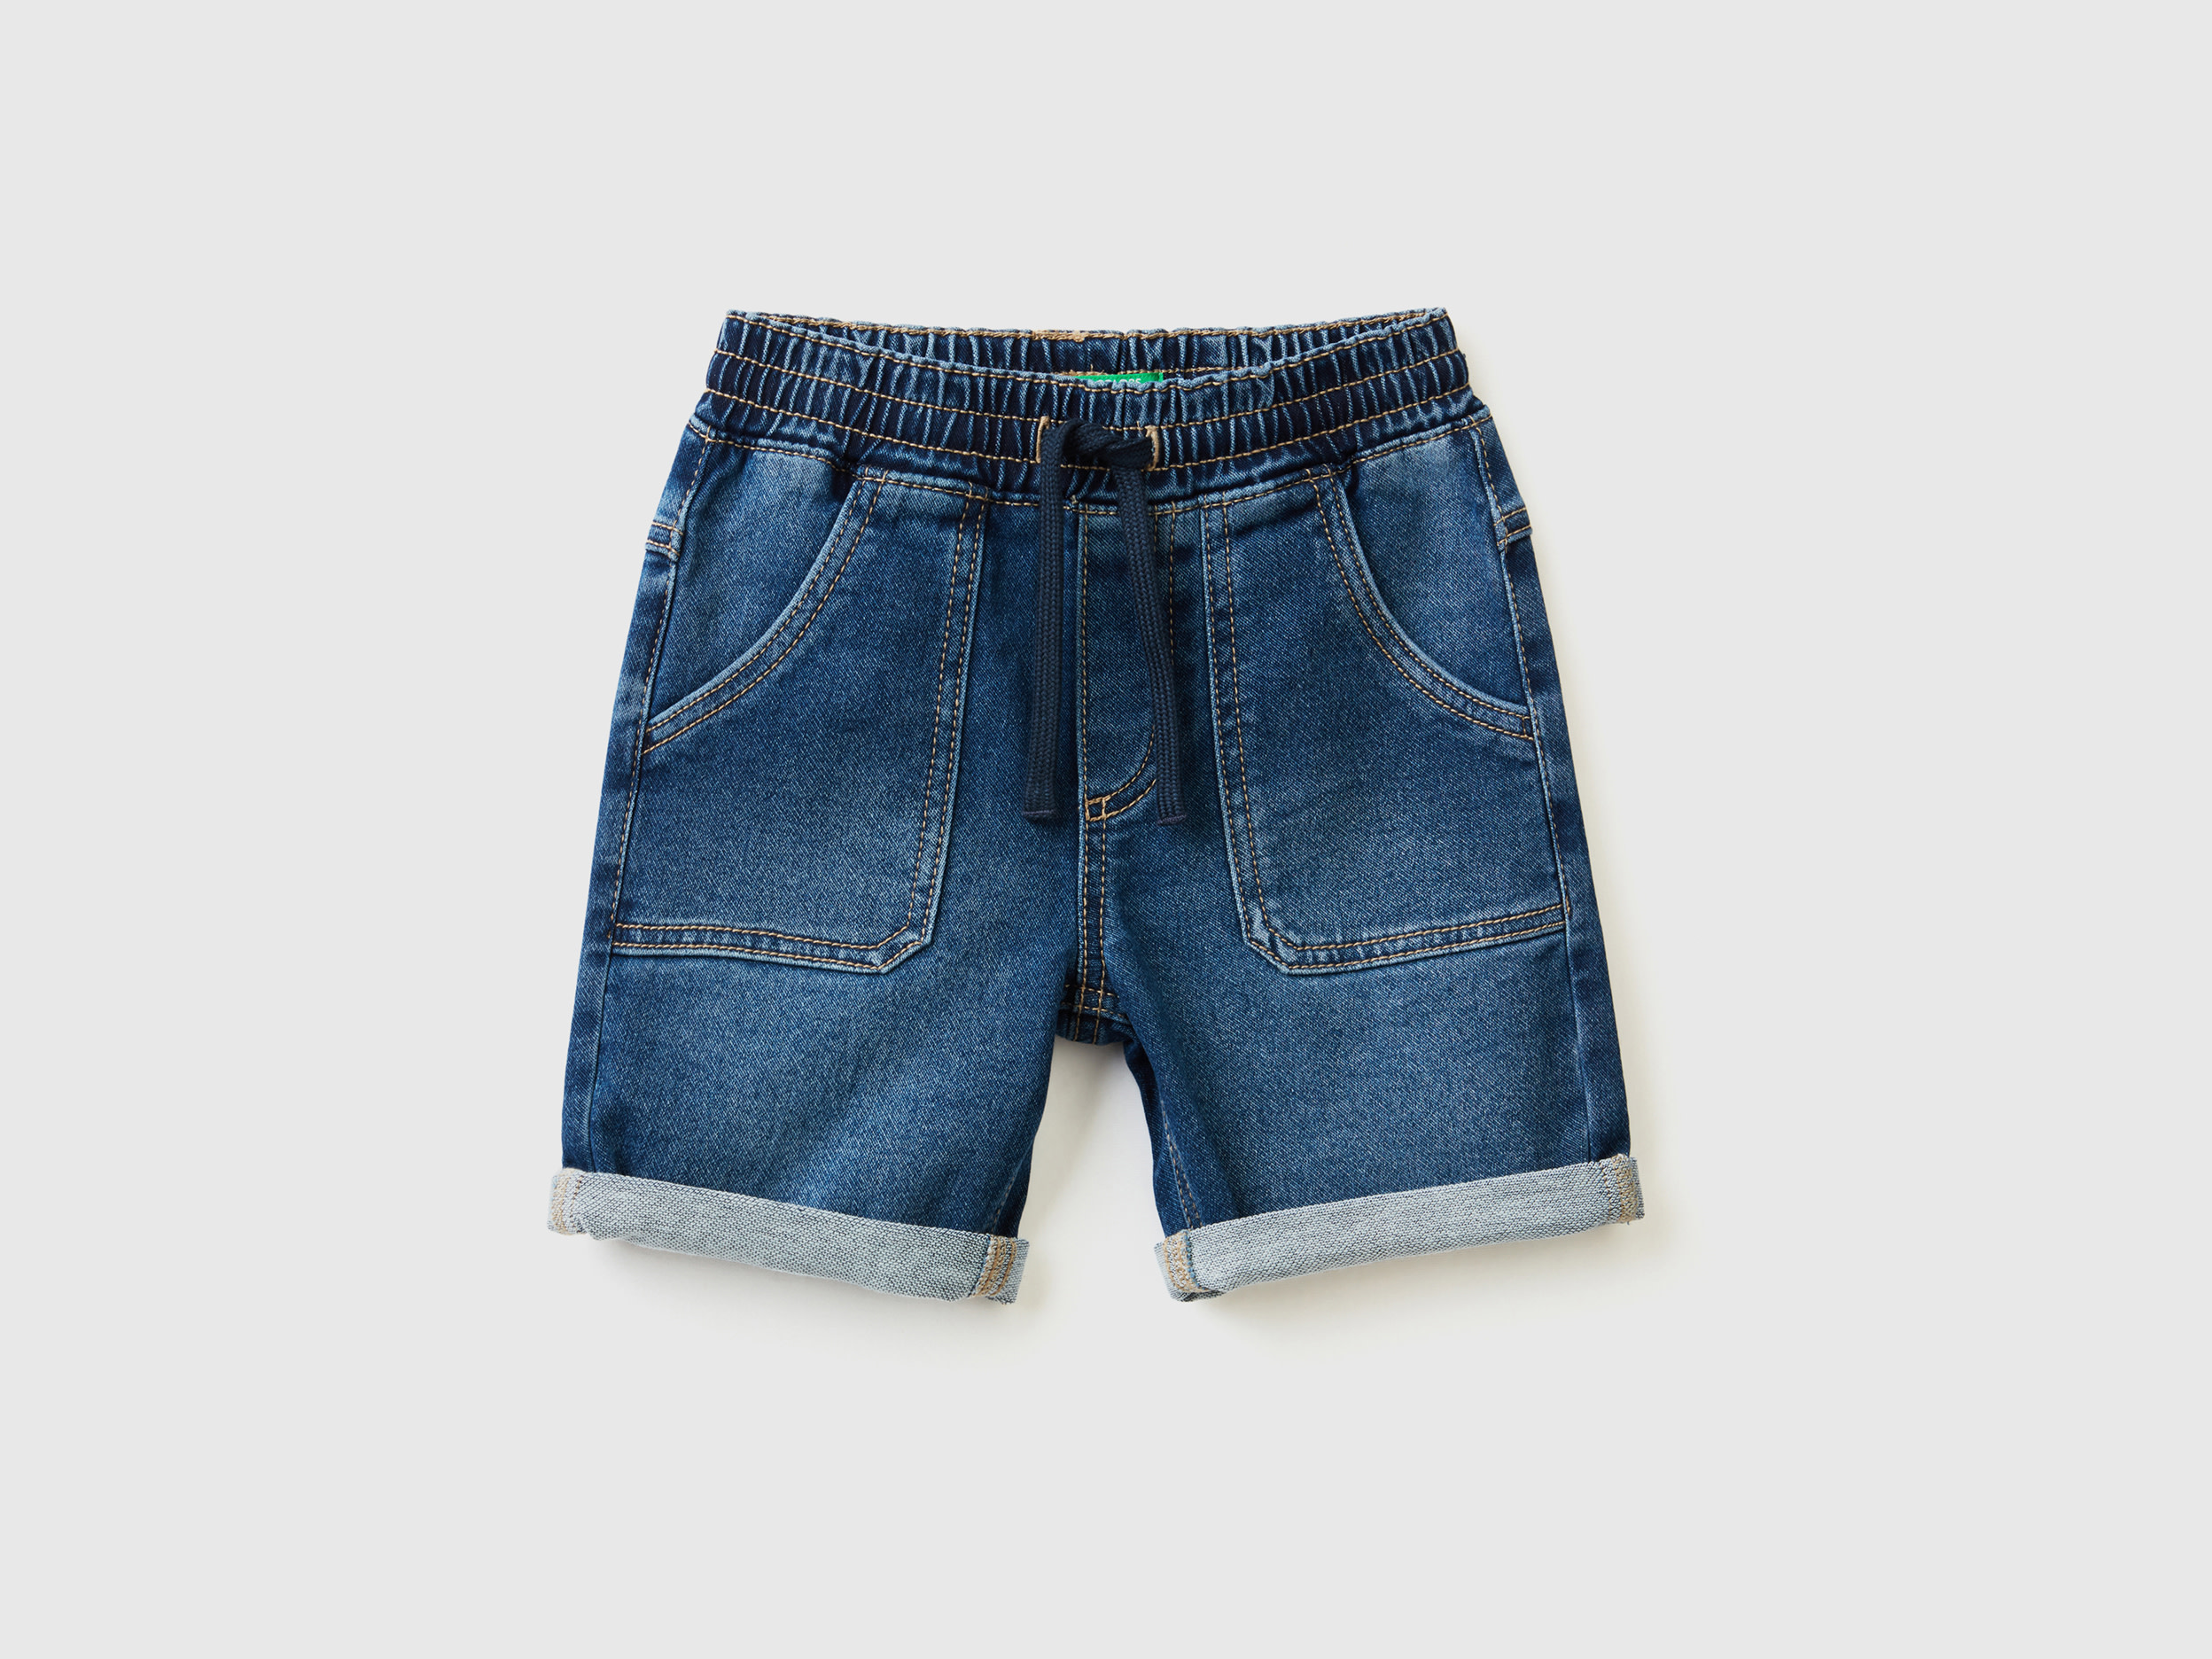 Benetton, Shorts In Stretch Denim, size 4-5, Blue, Kids